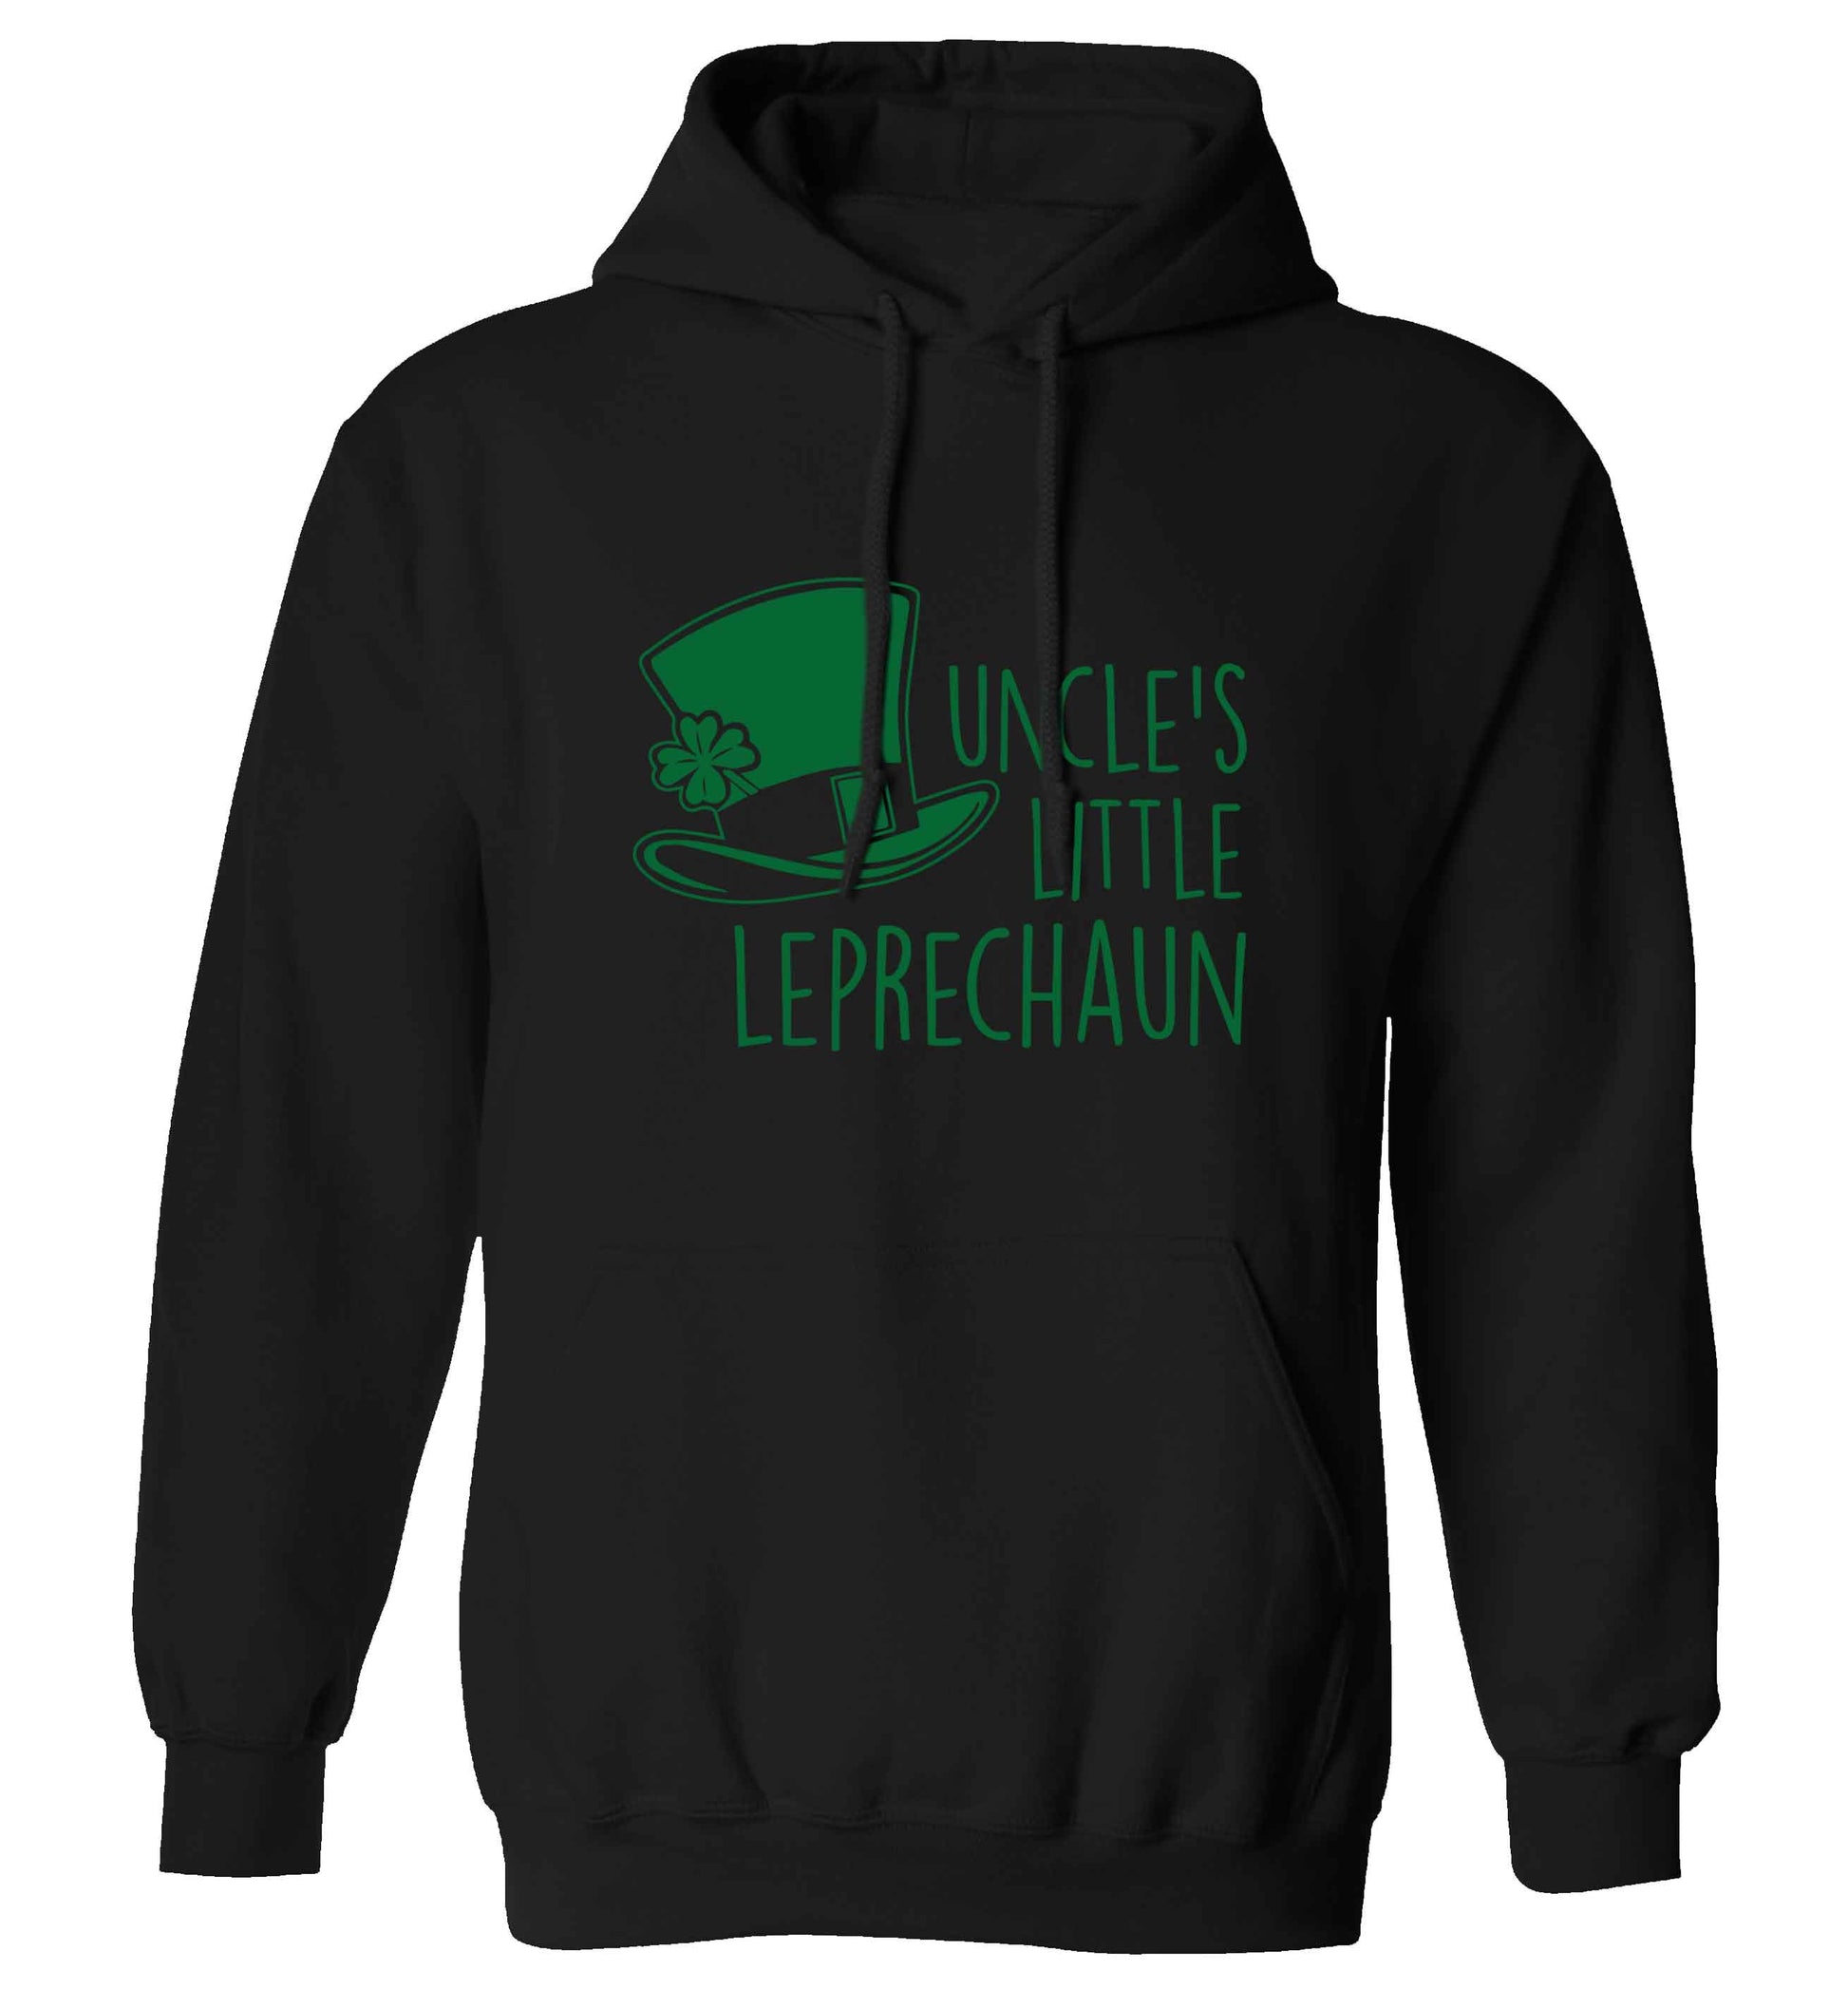 Uncles little leprechaun adults unisex black hoodie 2XL